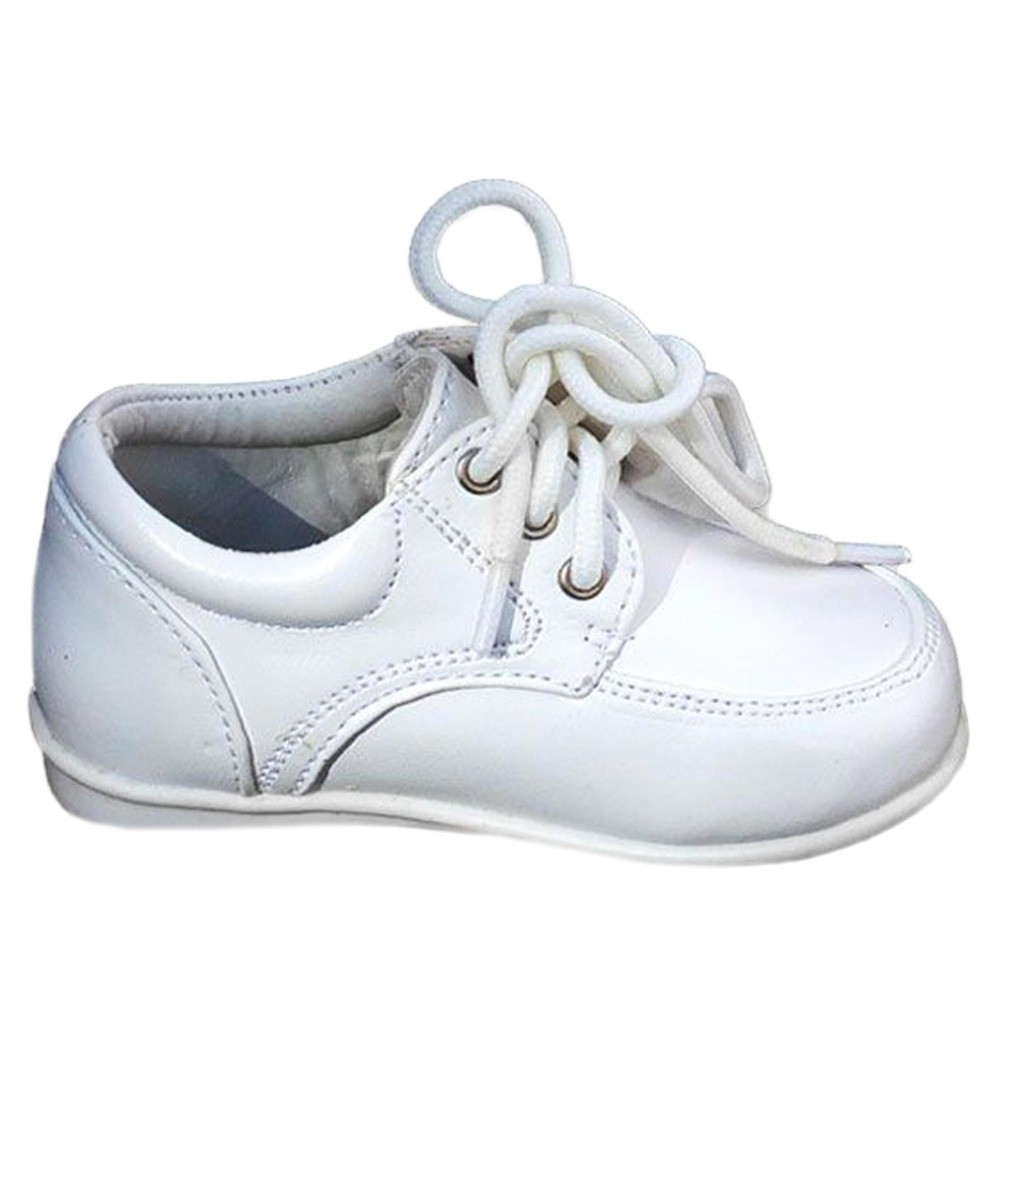 Baby Jungen Schuhe mit Schüren